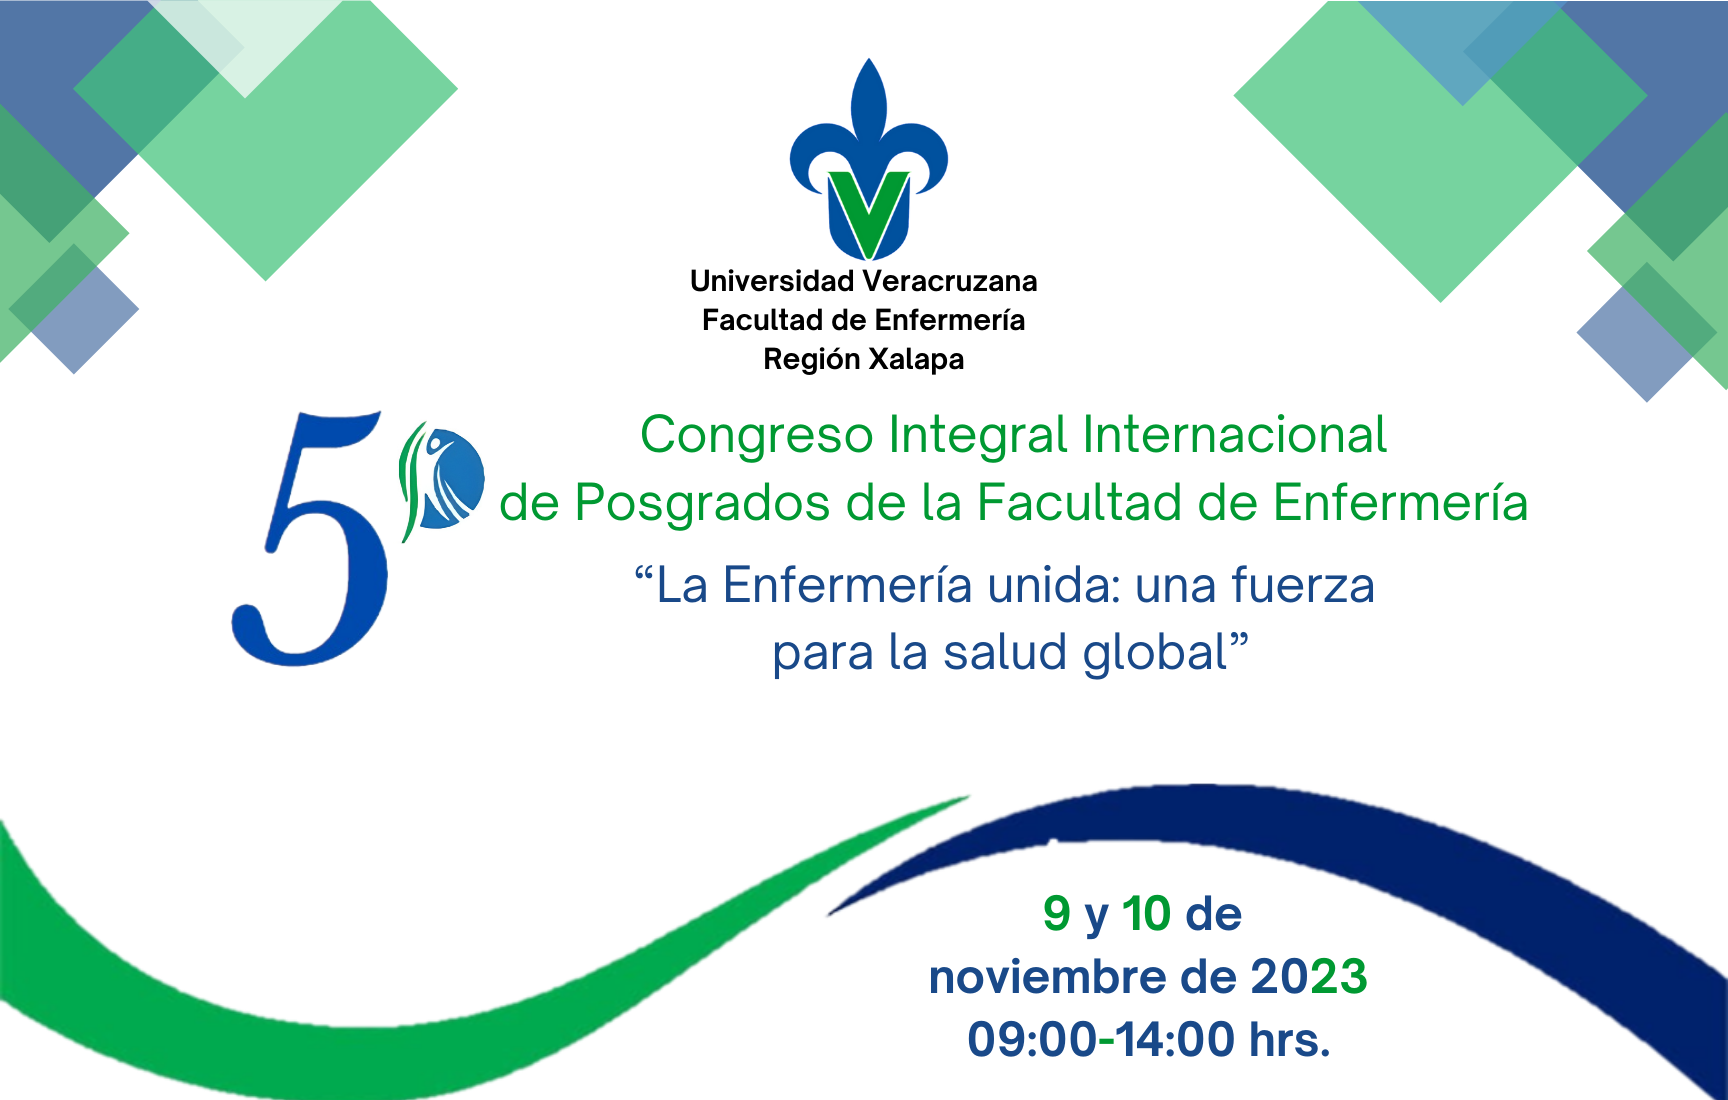 Invitan a Congreso Integral Internacional de Posgrados de la Facultad de Enfermería en Xalapa